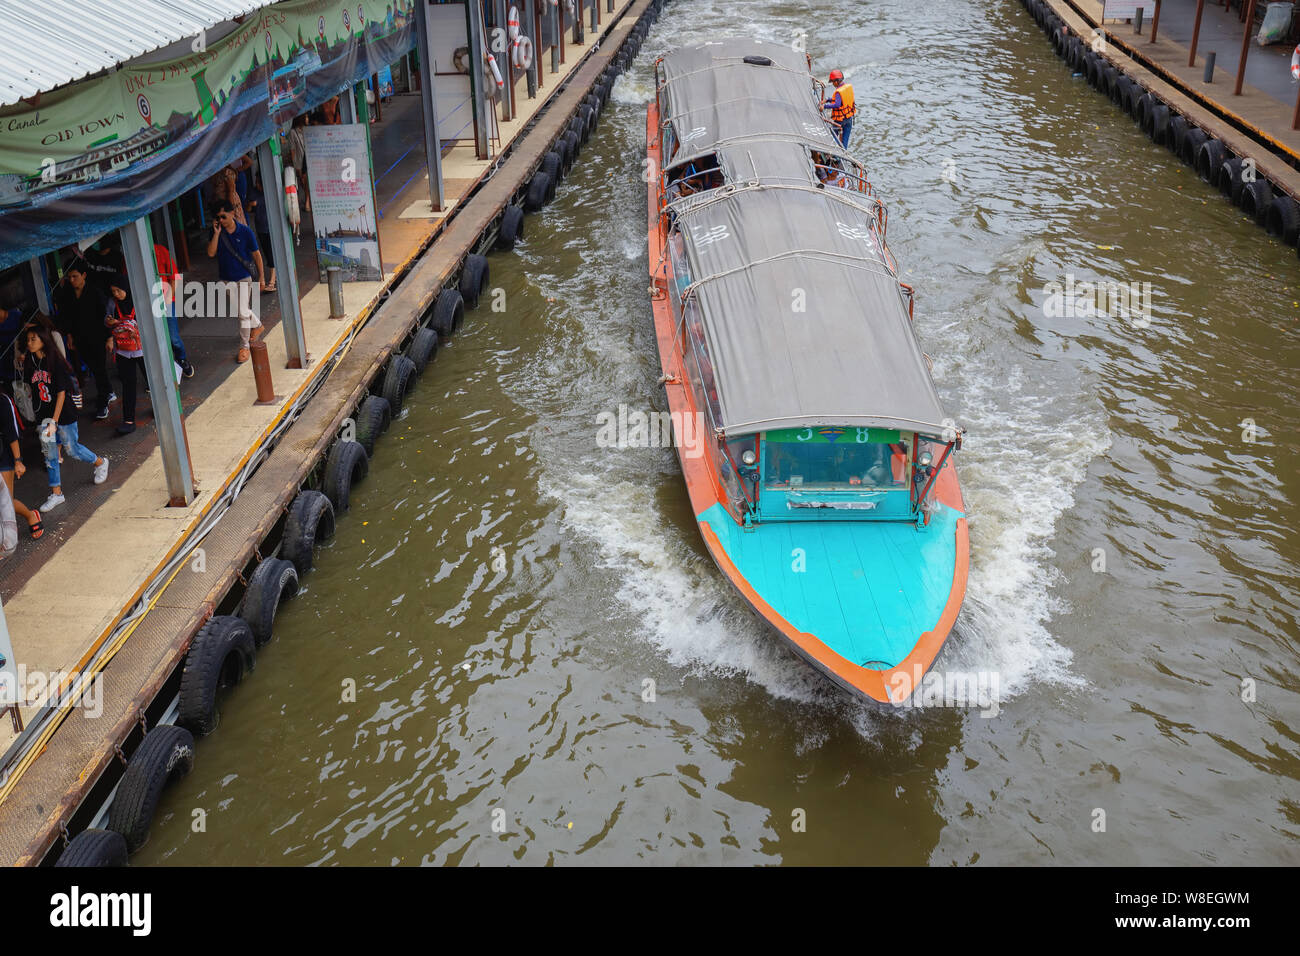 Bangkok - La Thaïlande, 3 août 2019 : la jetée de Pratunam, bateau express bus au centre de la ville. Saen Eape canal. Le trafic important sur Ratchadamri road Banque D'Images